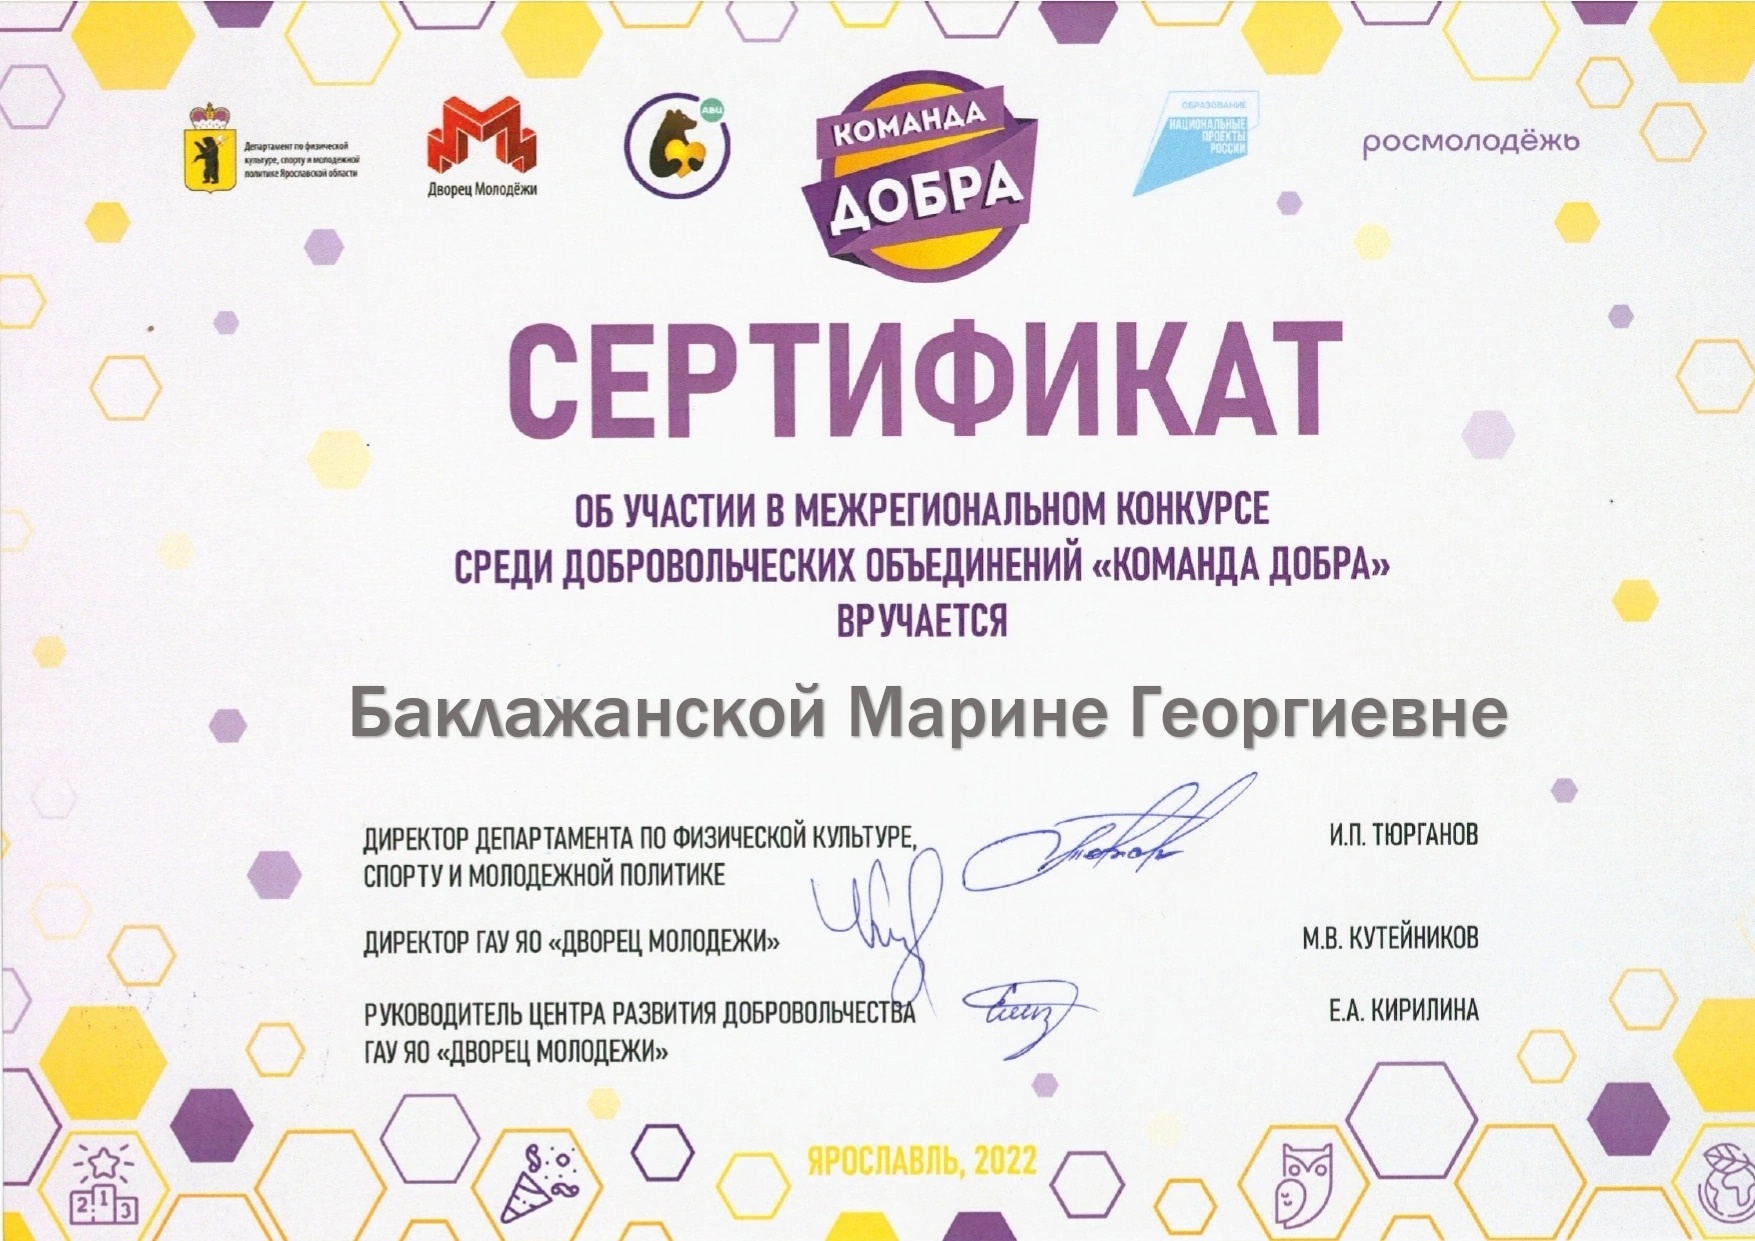 Сертификат участника межрегионального доброльческого конкурса